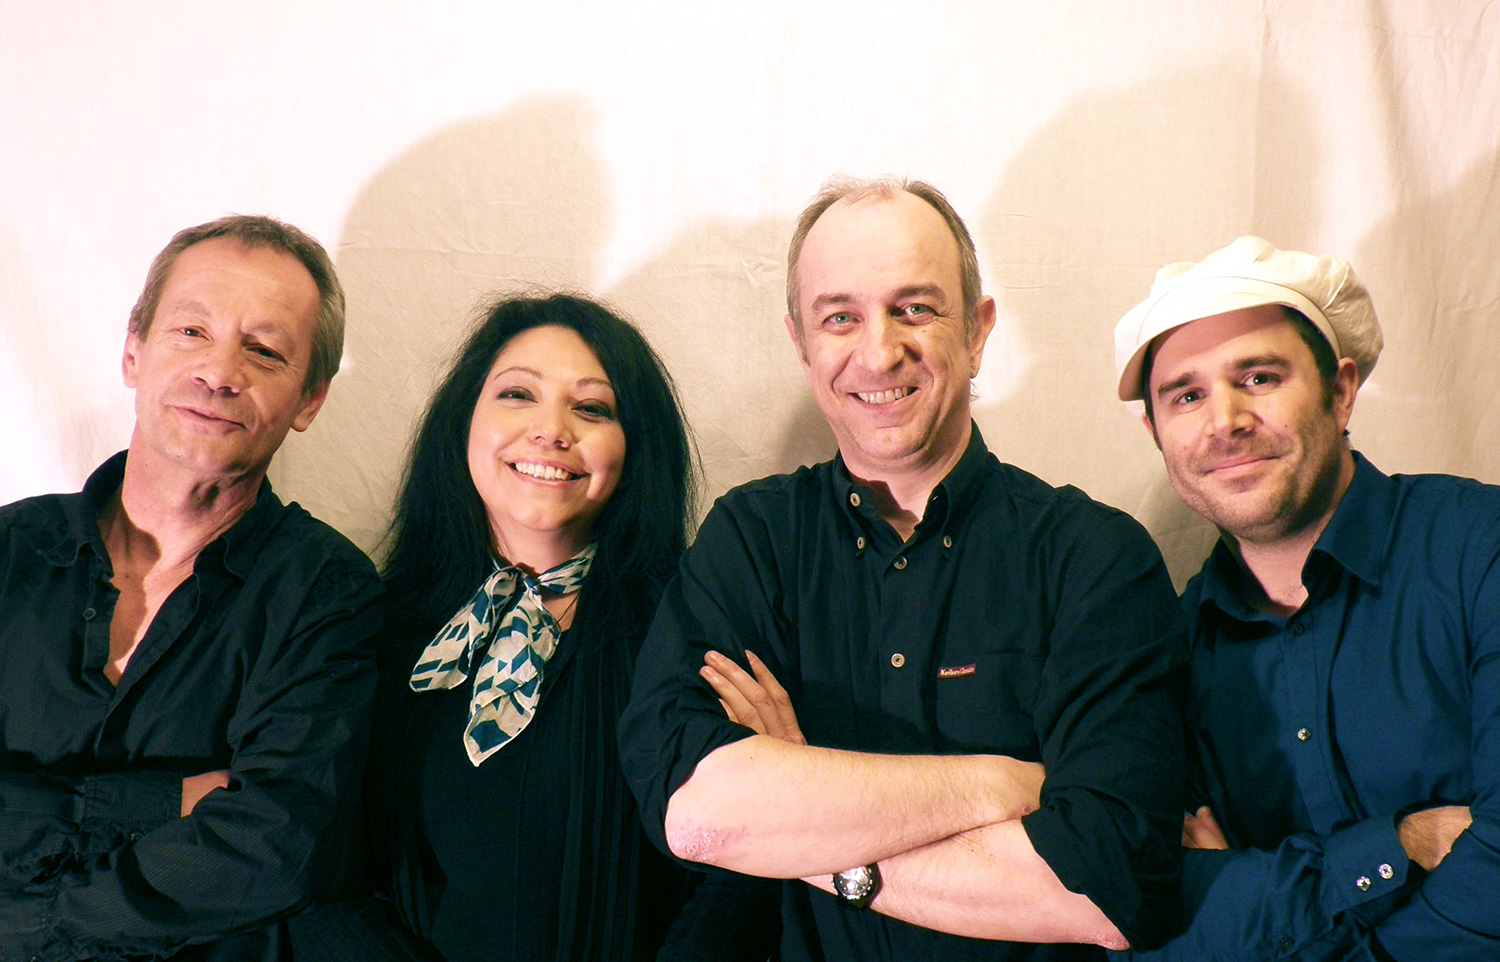 Smile Quartet - Gilles Besse, Huguette Payet, Fabrice Jimenez, Vincent Lepoivre